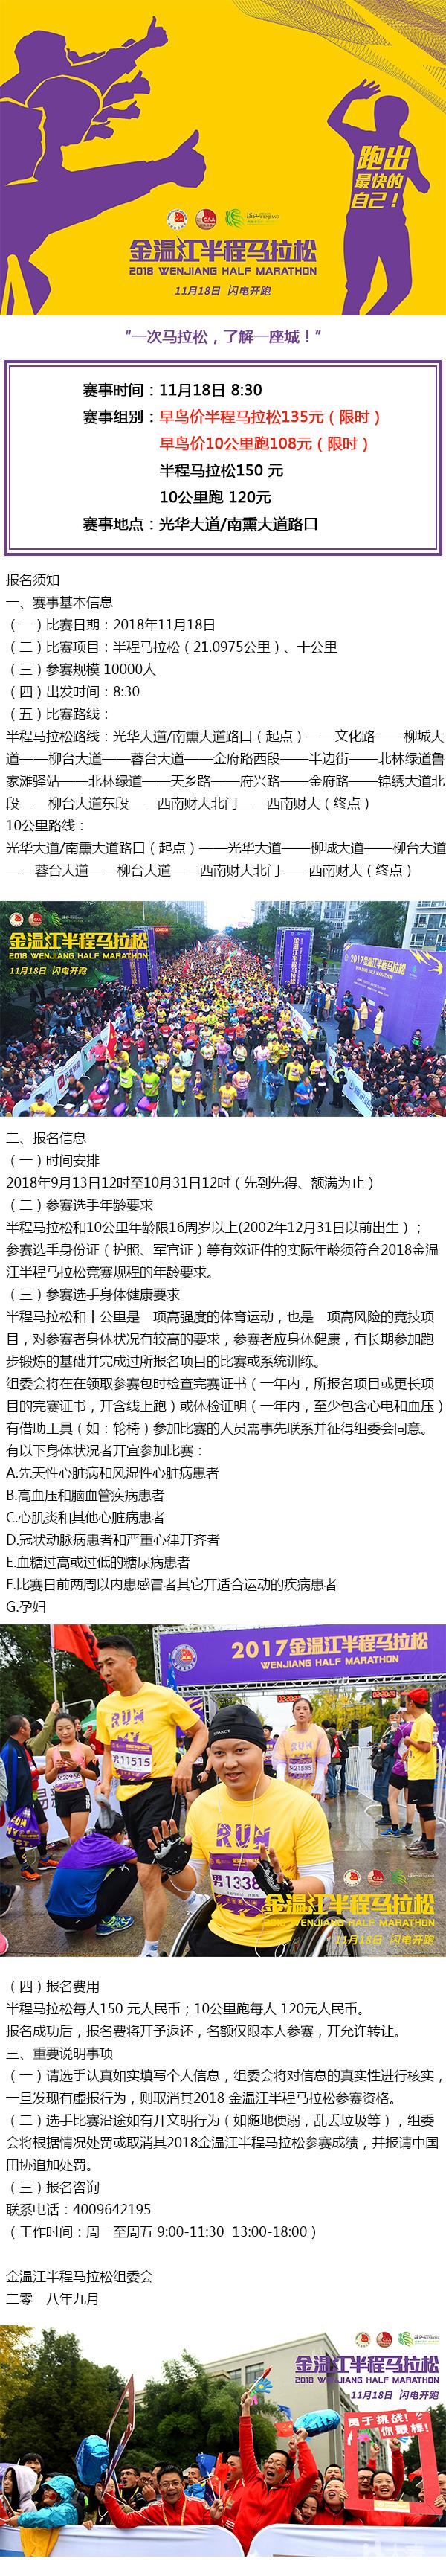 2018金温江半程马拉松赛